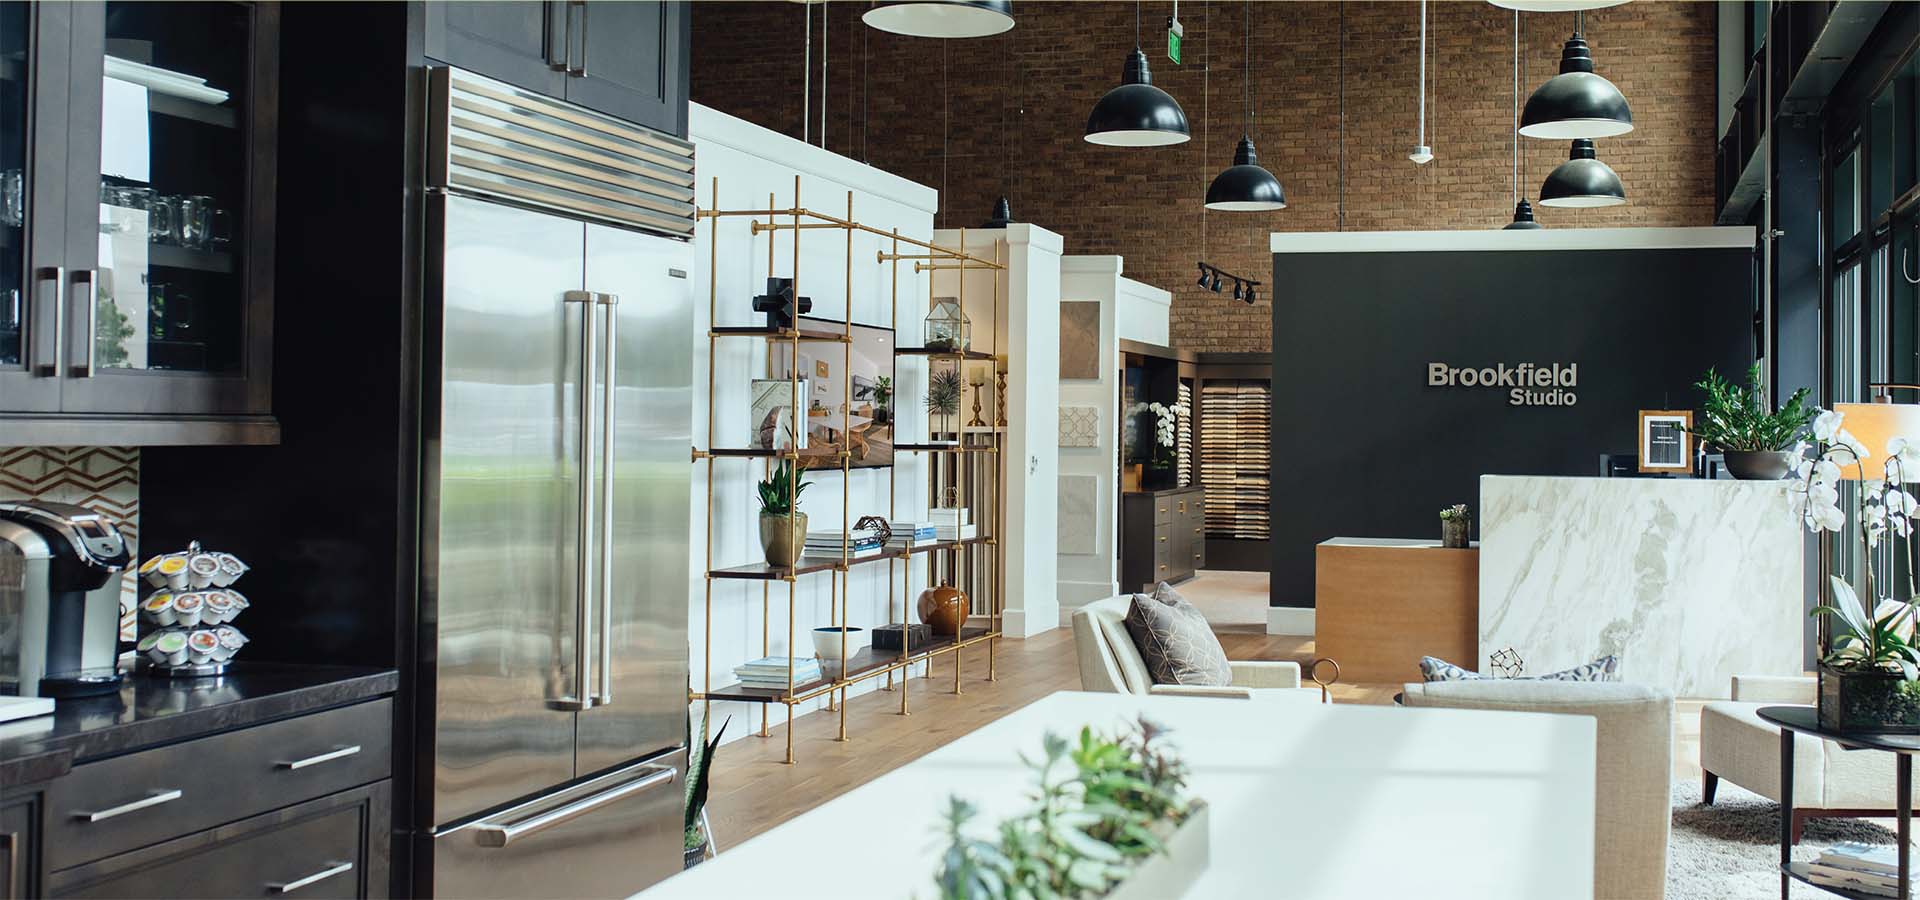 Brookfield Design Studio Kitchen